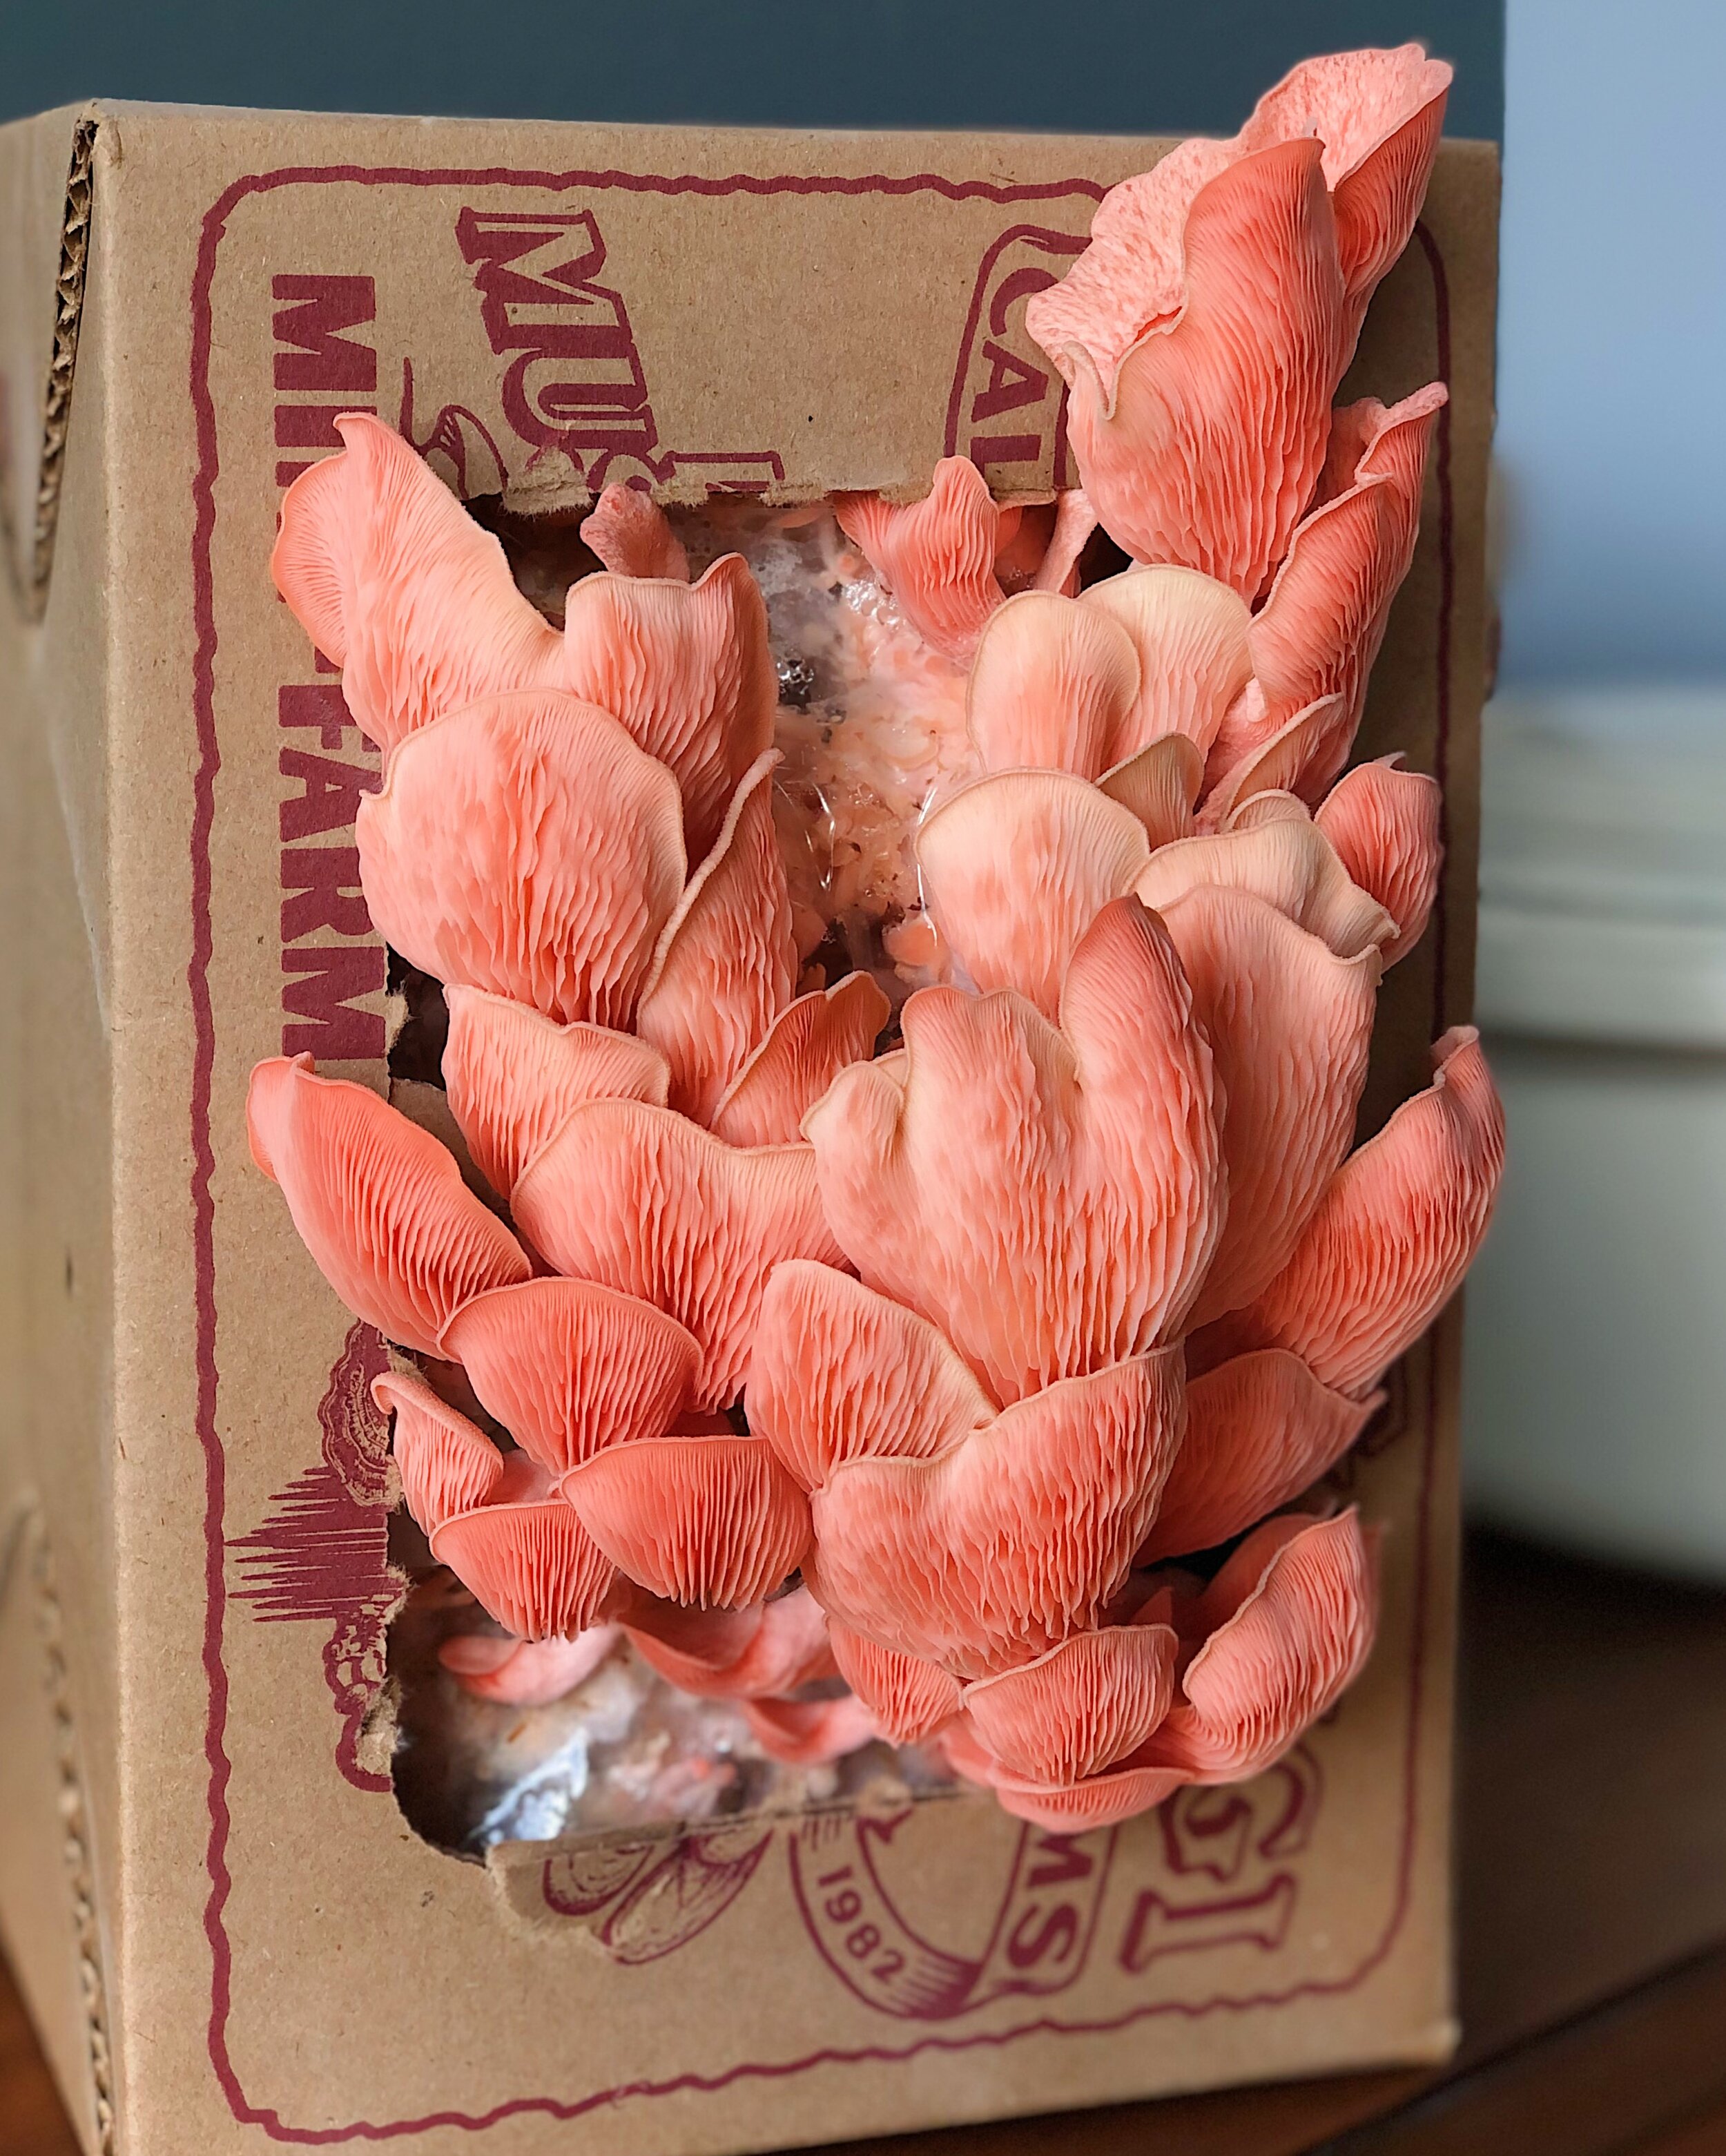 Sun Luck Straw Mushrooms, Whole Peeled, in Brine, Mushroom